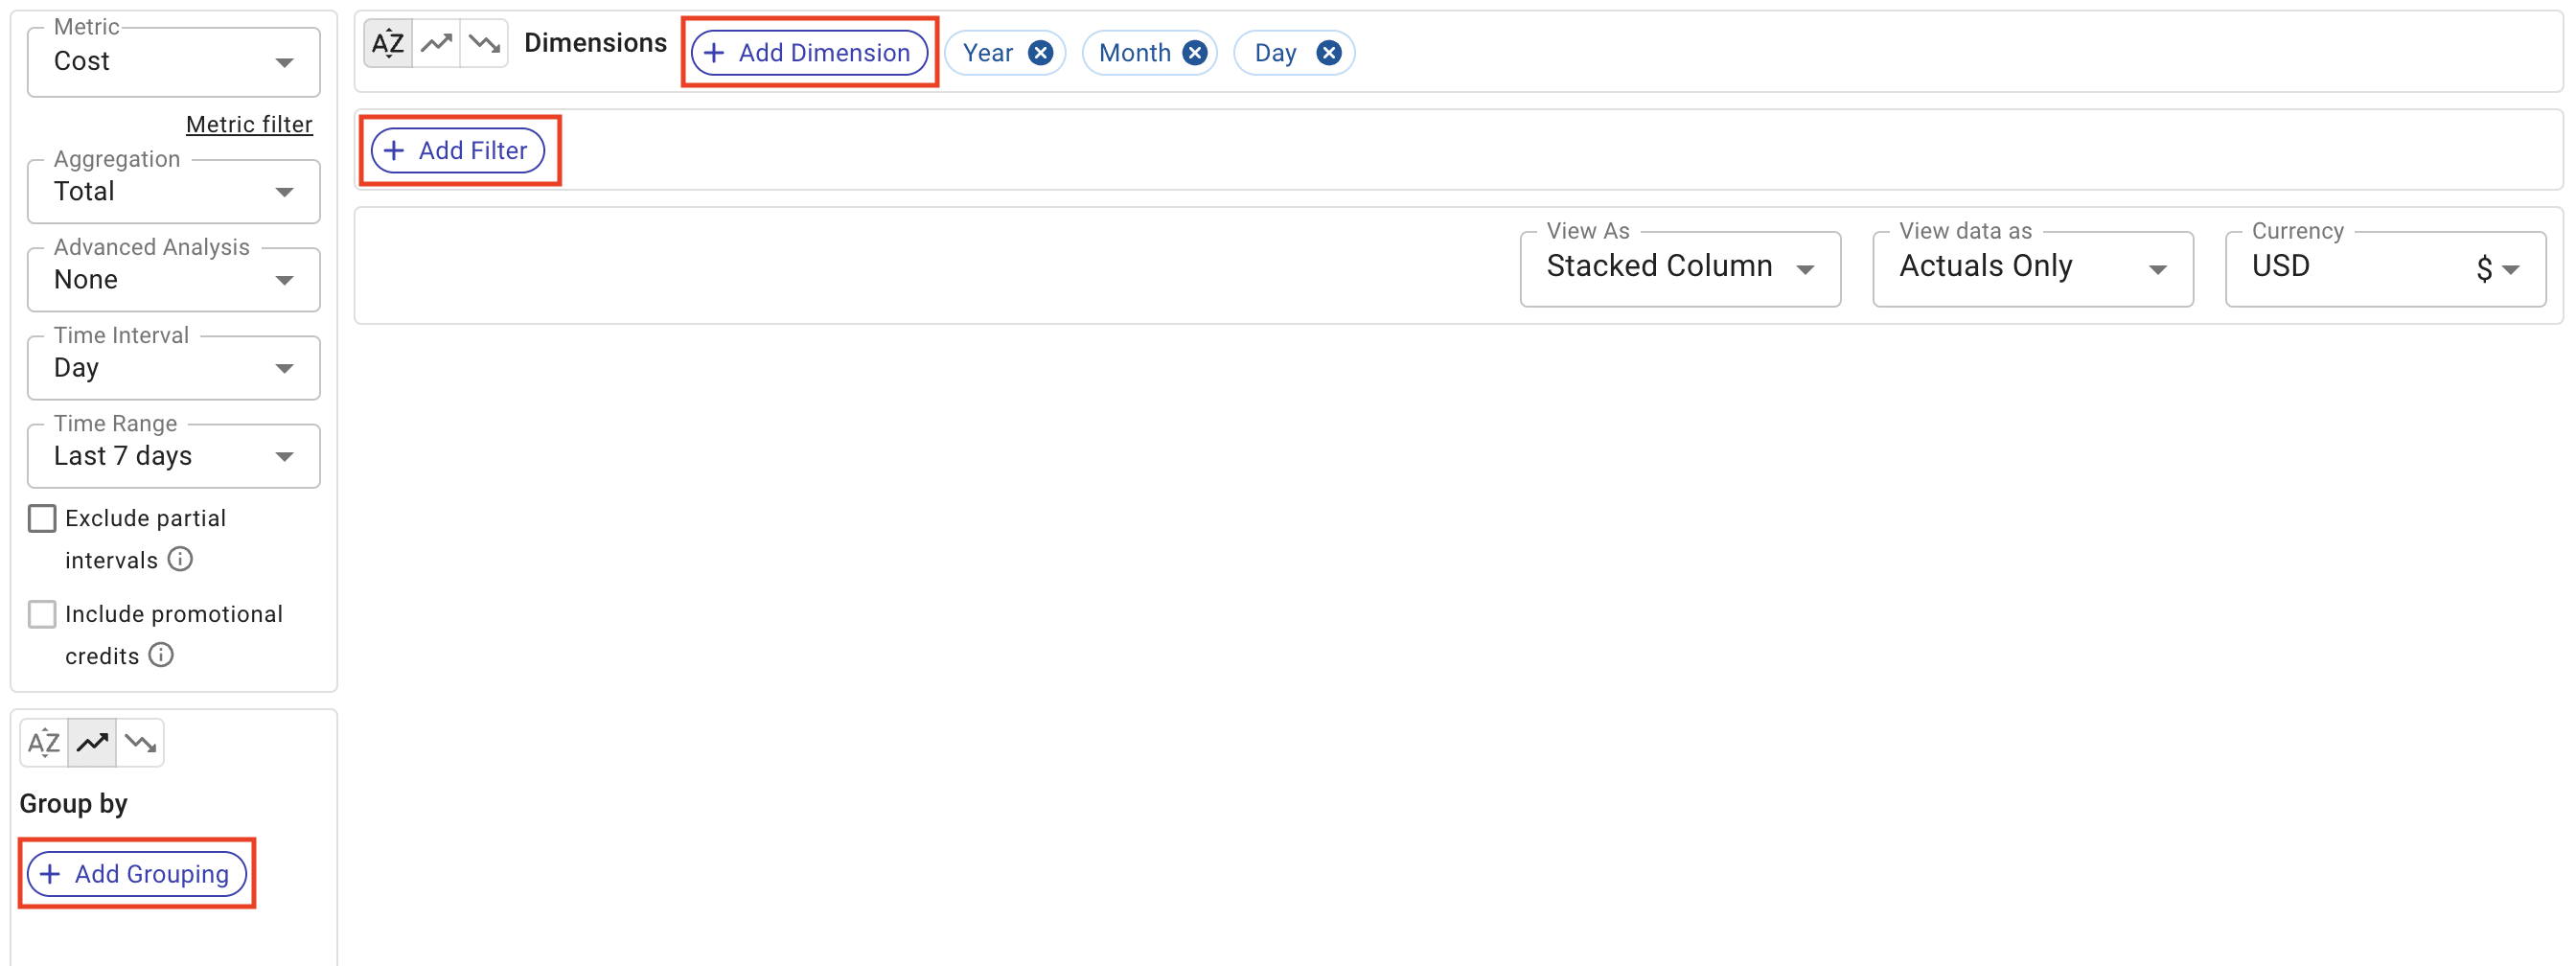 A screenshot showing an empty Cloud Analytics report